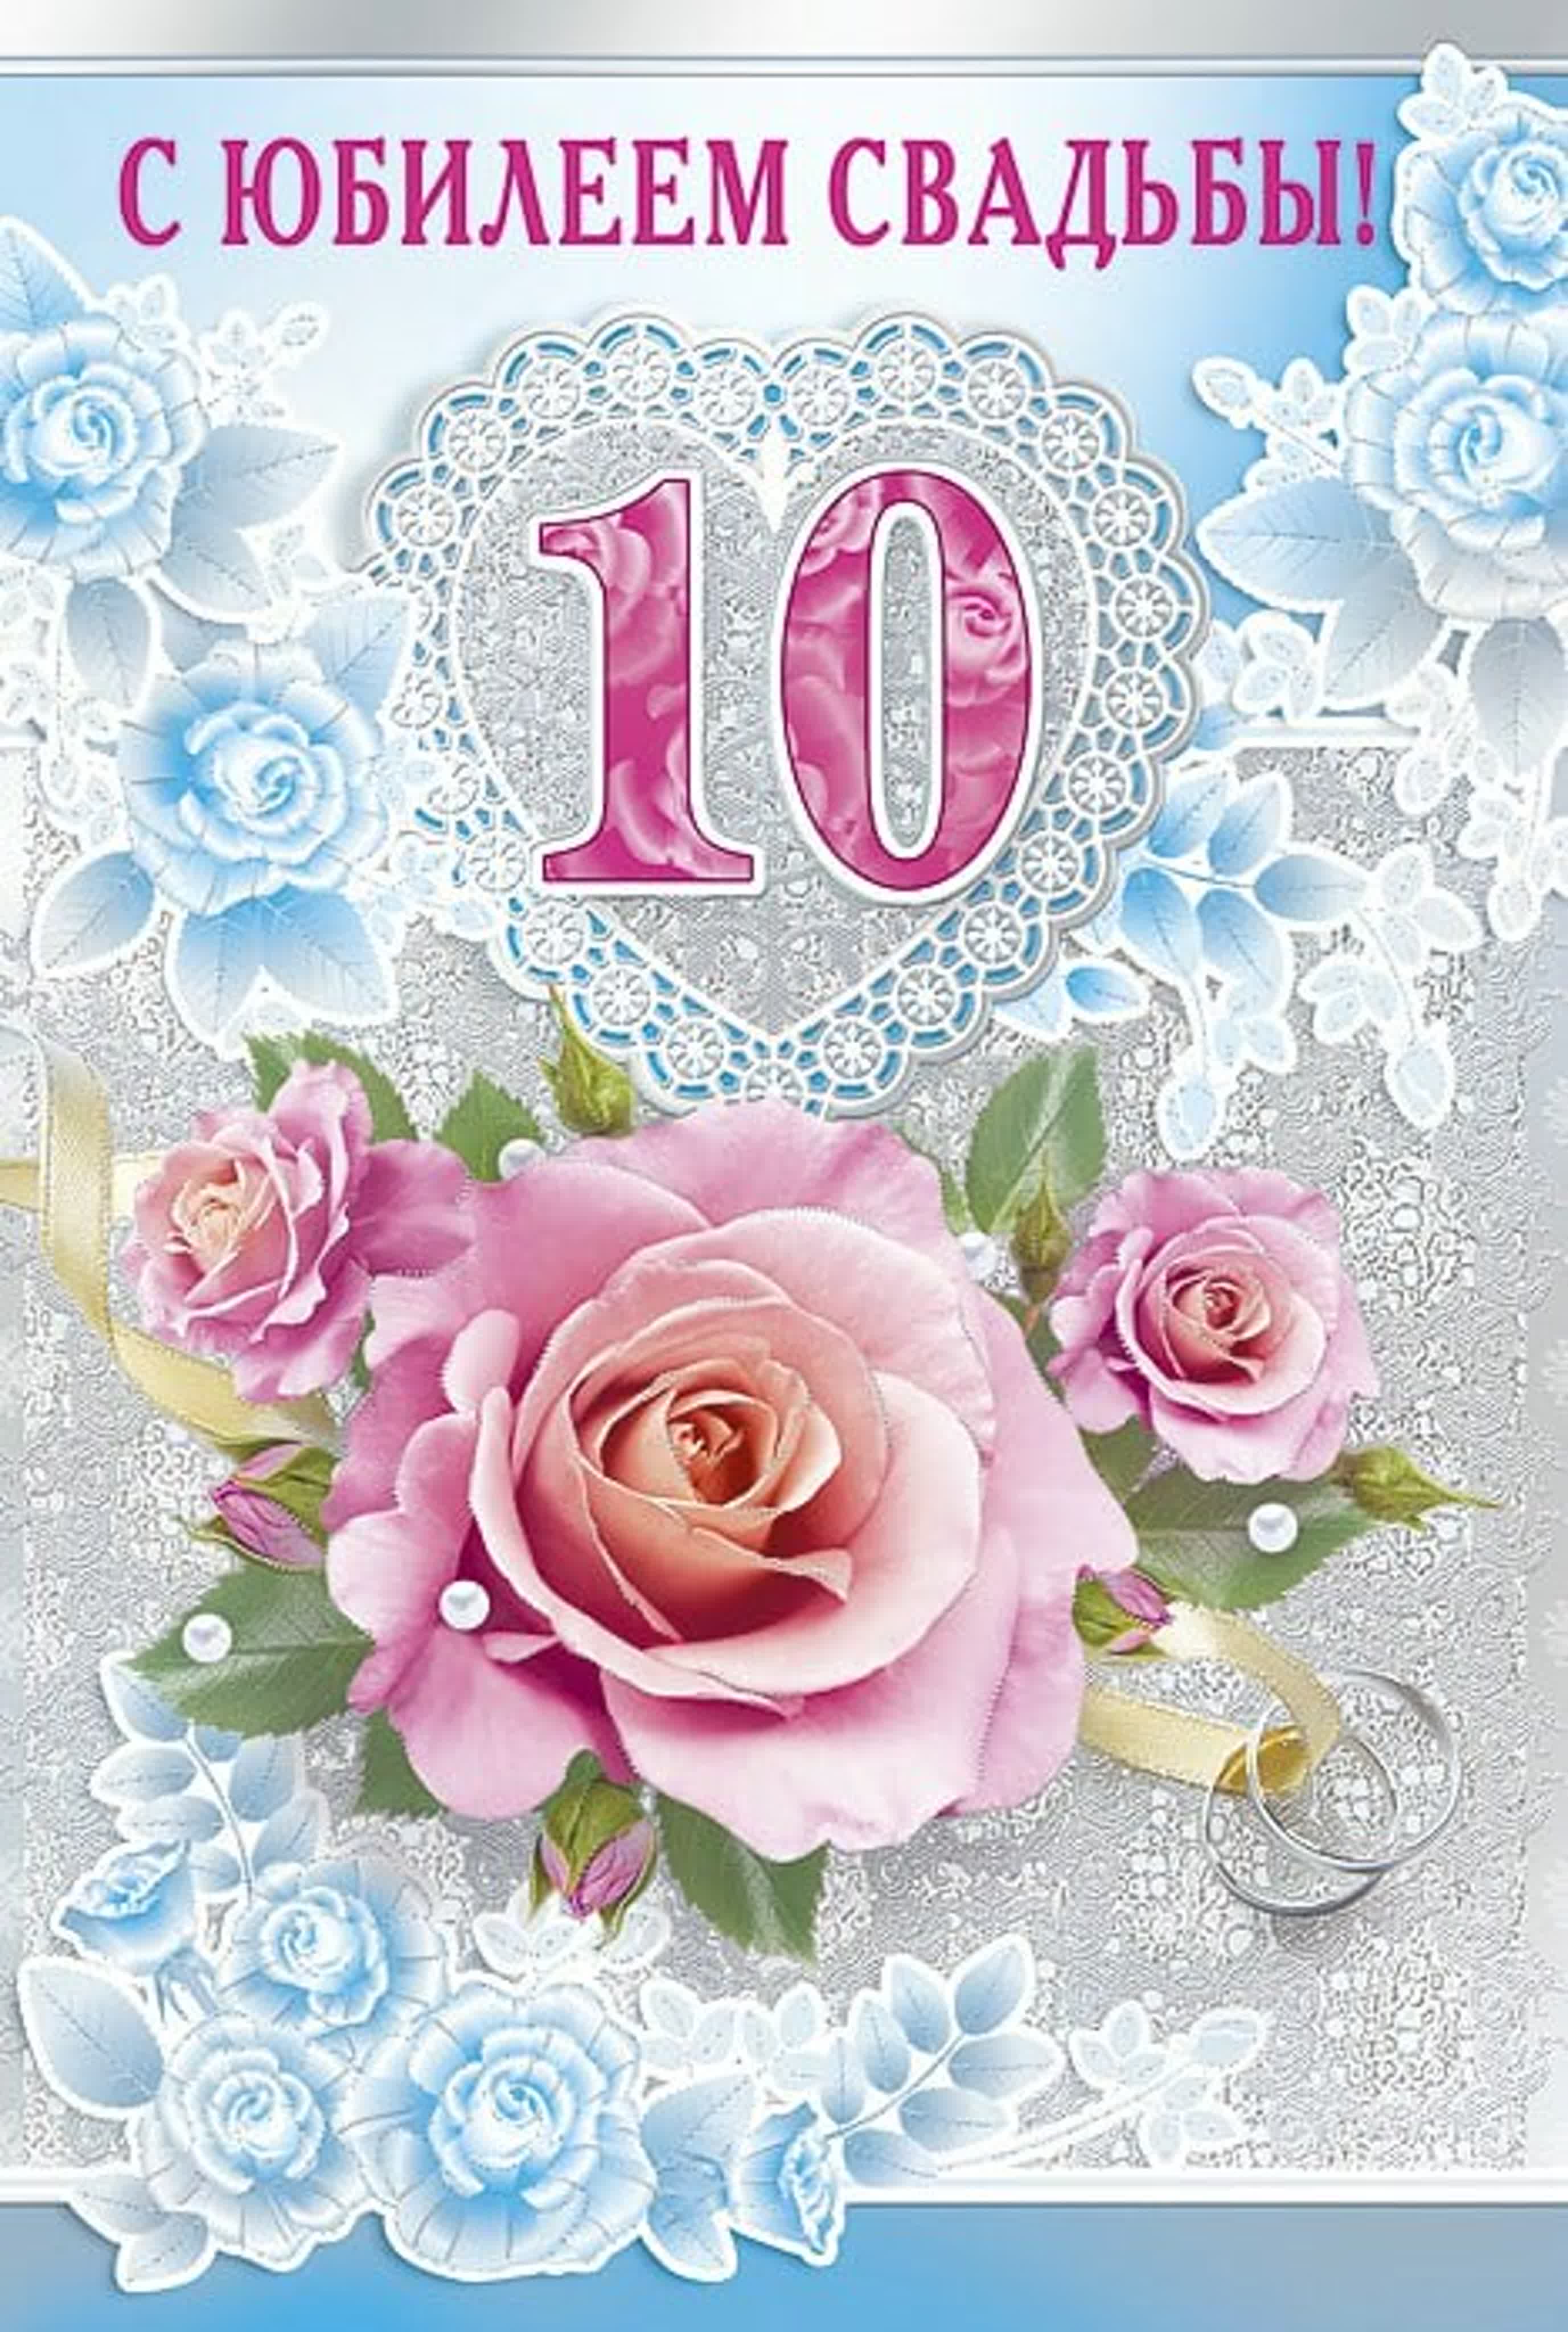 Поздравления 10 классу. 10 Лет свадьбы. 10 Лет свадьбы поздравления. С юбилеем свадьбы 10 лет. Розовая свадьба.